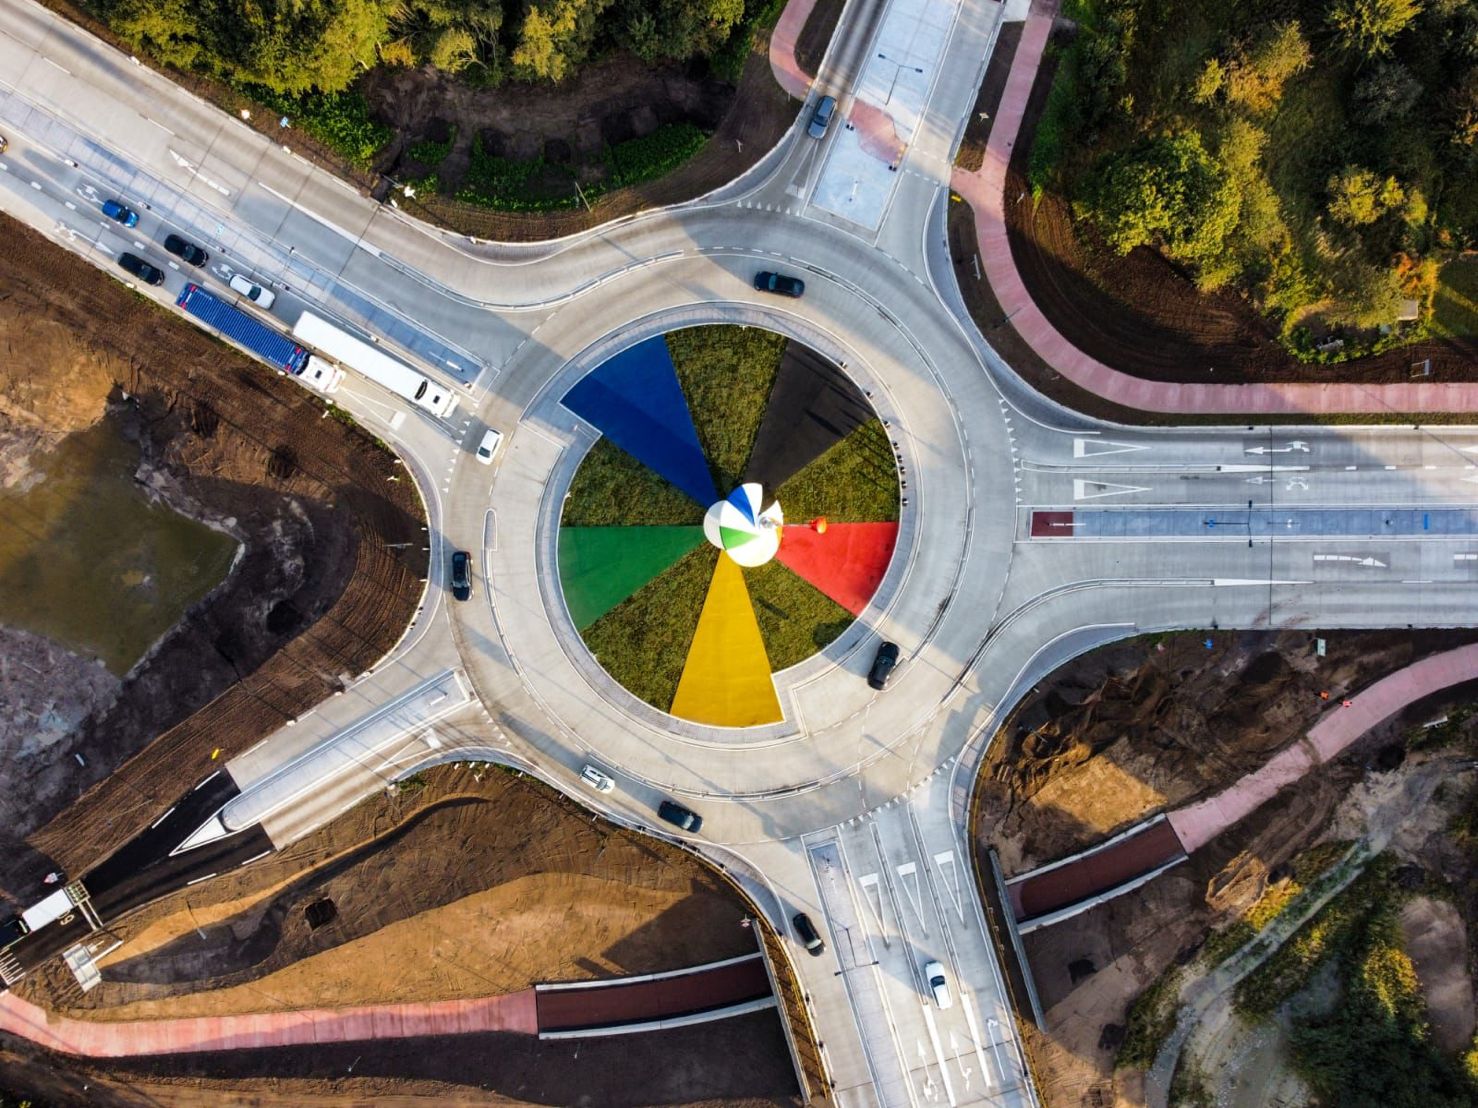 De rotonde de Bromtol is het kruispunt van 5 wegen, en dankt haar naam aan de bromtol in het midden. Possehl heeft het oppervlak in het midden voorzien van gekleurde vlakken met circulair glas in de kleuren rood, geel, groen, blauw en zwart.